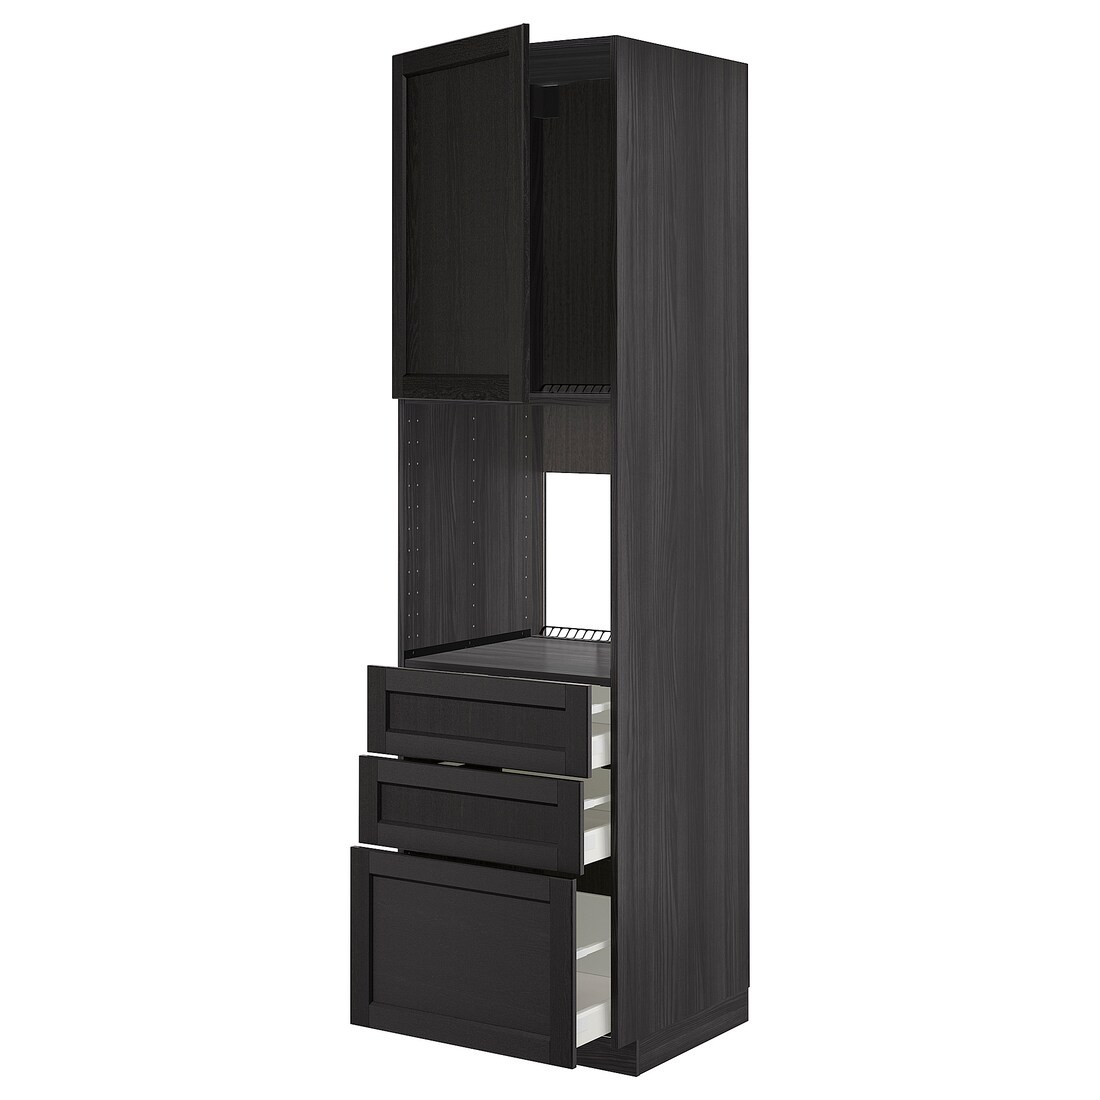 IKEA METOD МЕТОД / MAXIMERA МАКСИМЕРА Высокий шкаф для духовки, черный / Lerhyttan черная морилка, 60x60x220 см 19460983 | 194.609.83